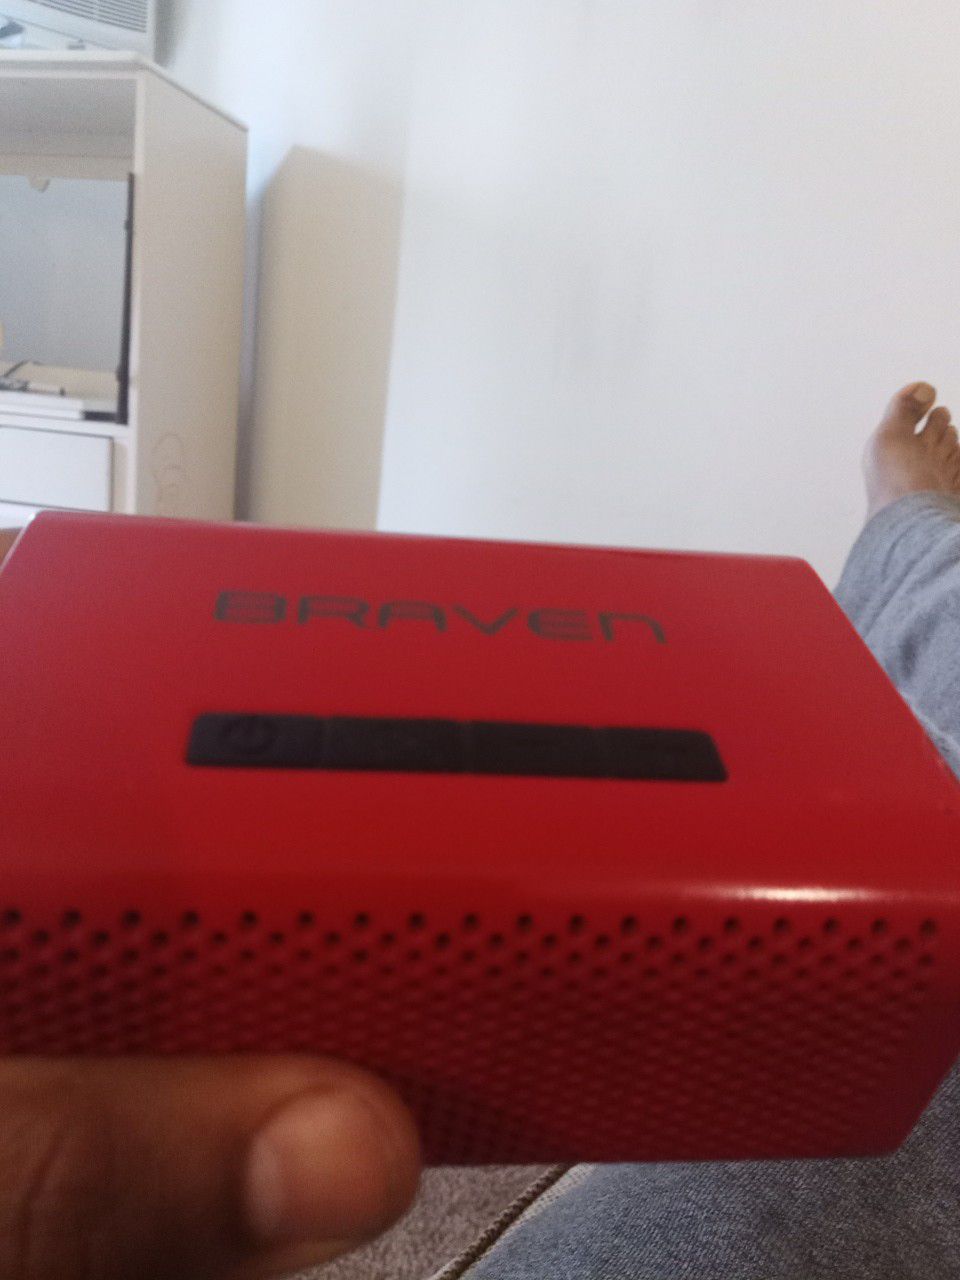 Braven Bluetooth speaker